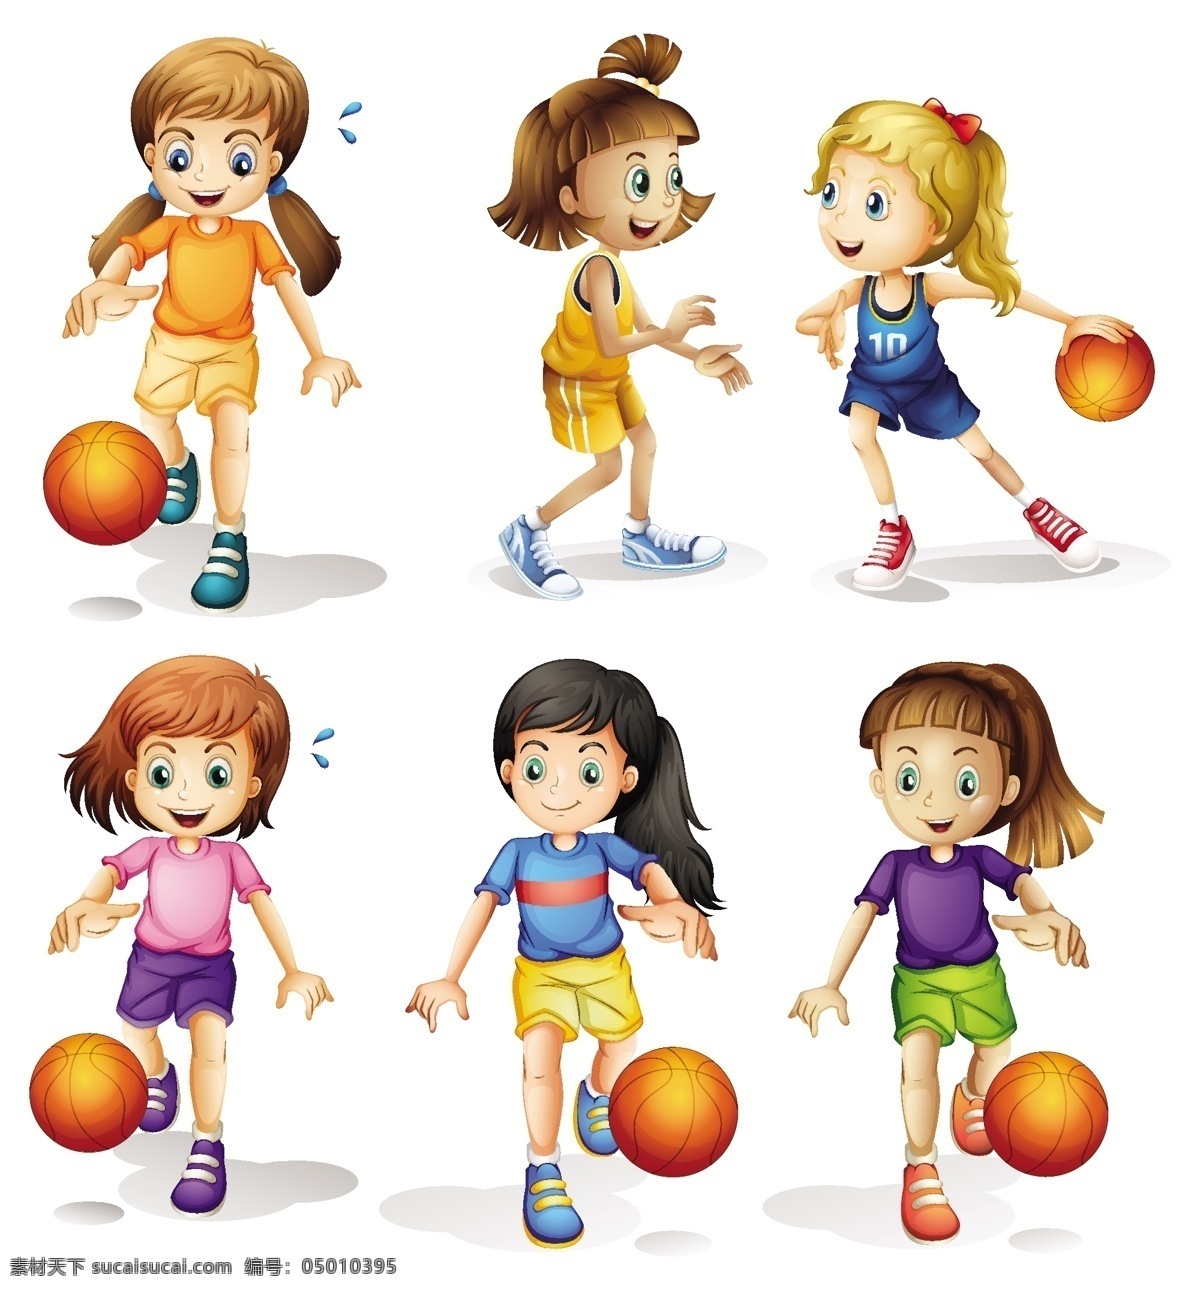 卡通蓝球女孩 卡通蓝球儿童 打球 蓝球 女孩 儿童 学生 动作 表情 体育 运动 儿童人物素材 健身 休闲娱乐体育 卡通设计